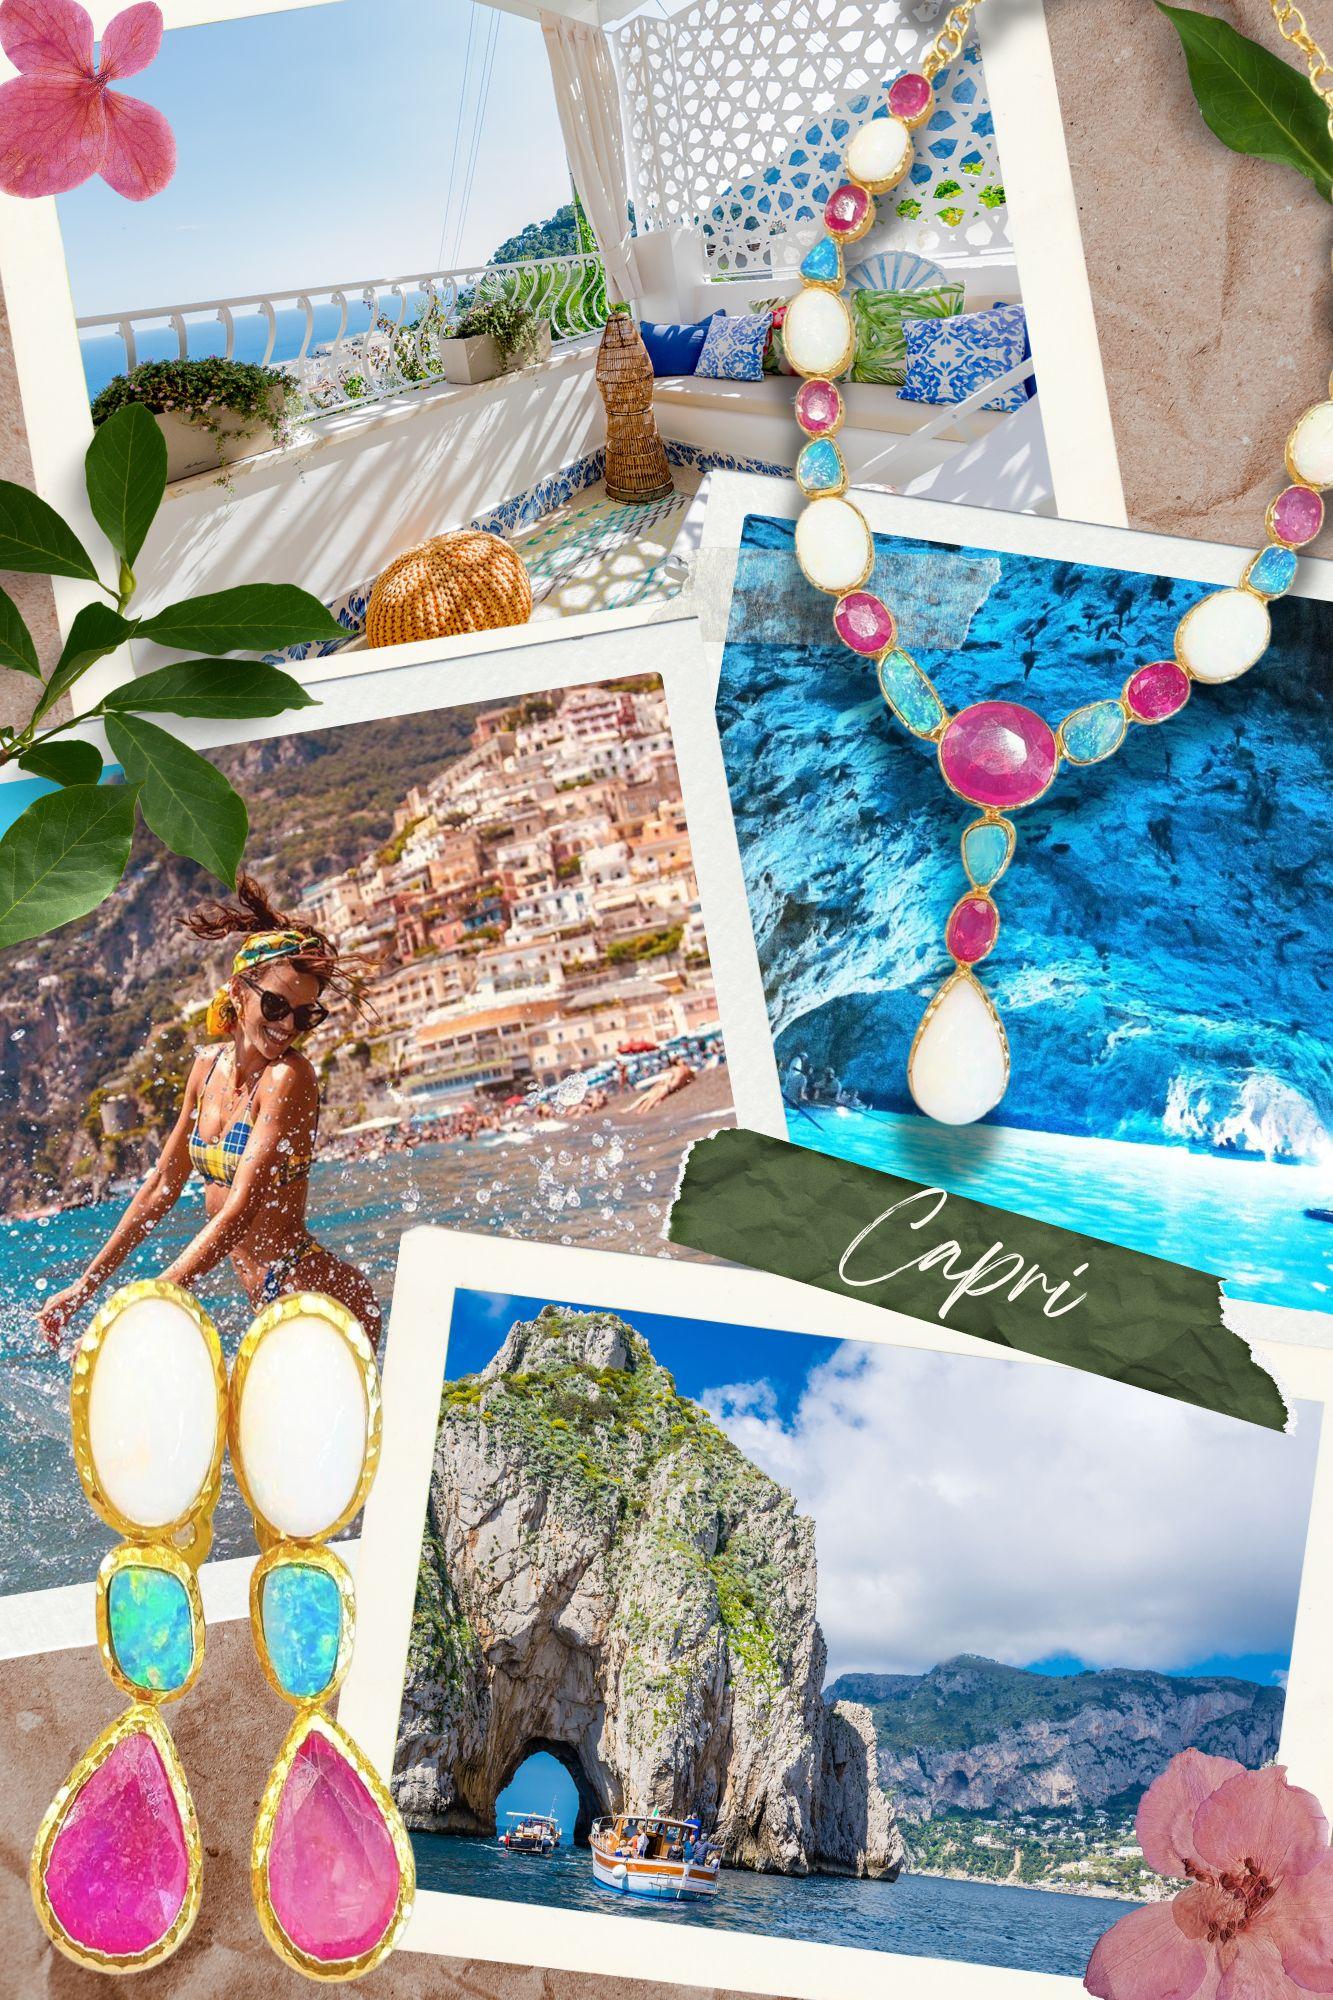 Bochic “Capri” Blue & White Opal Earrings Set In 18K Gold & Silver  For Sale 3